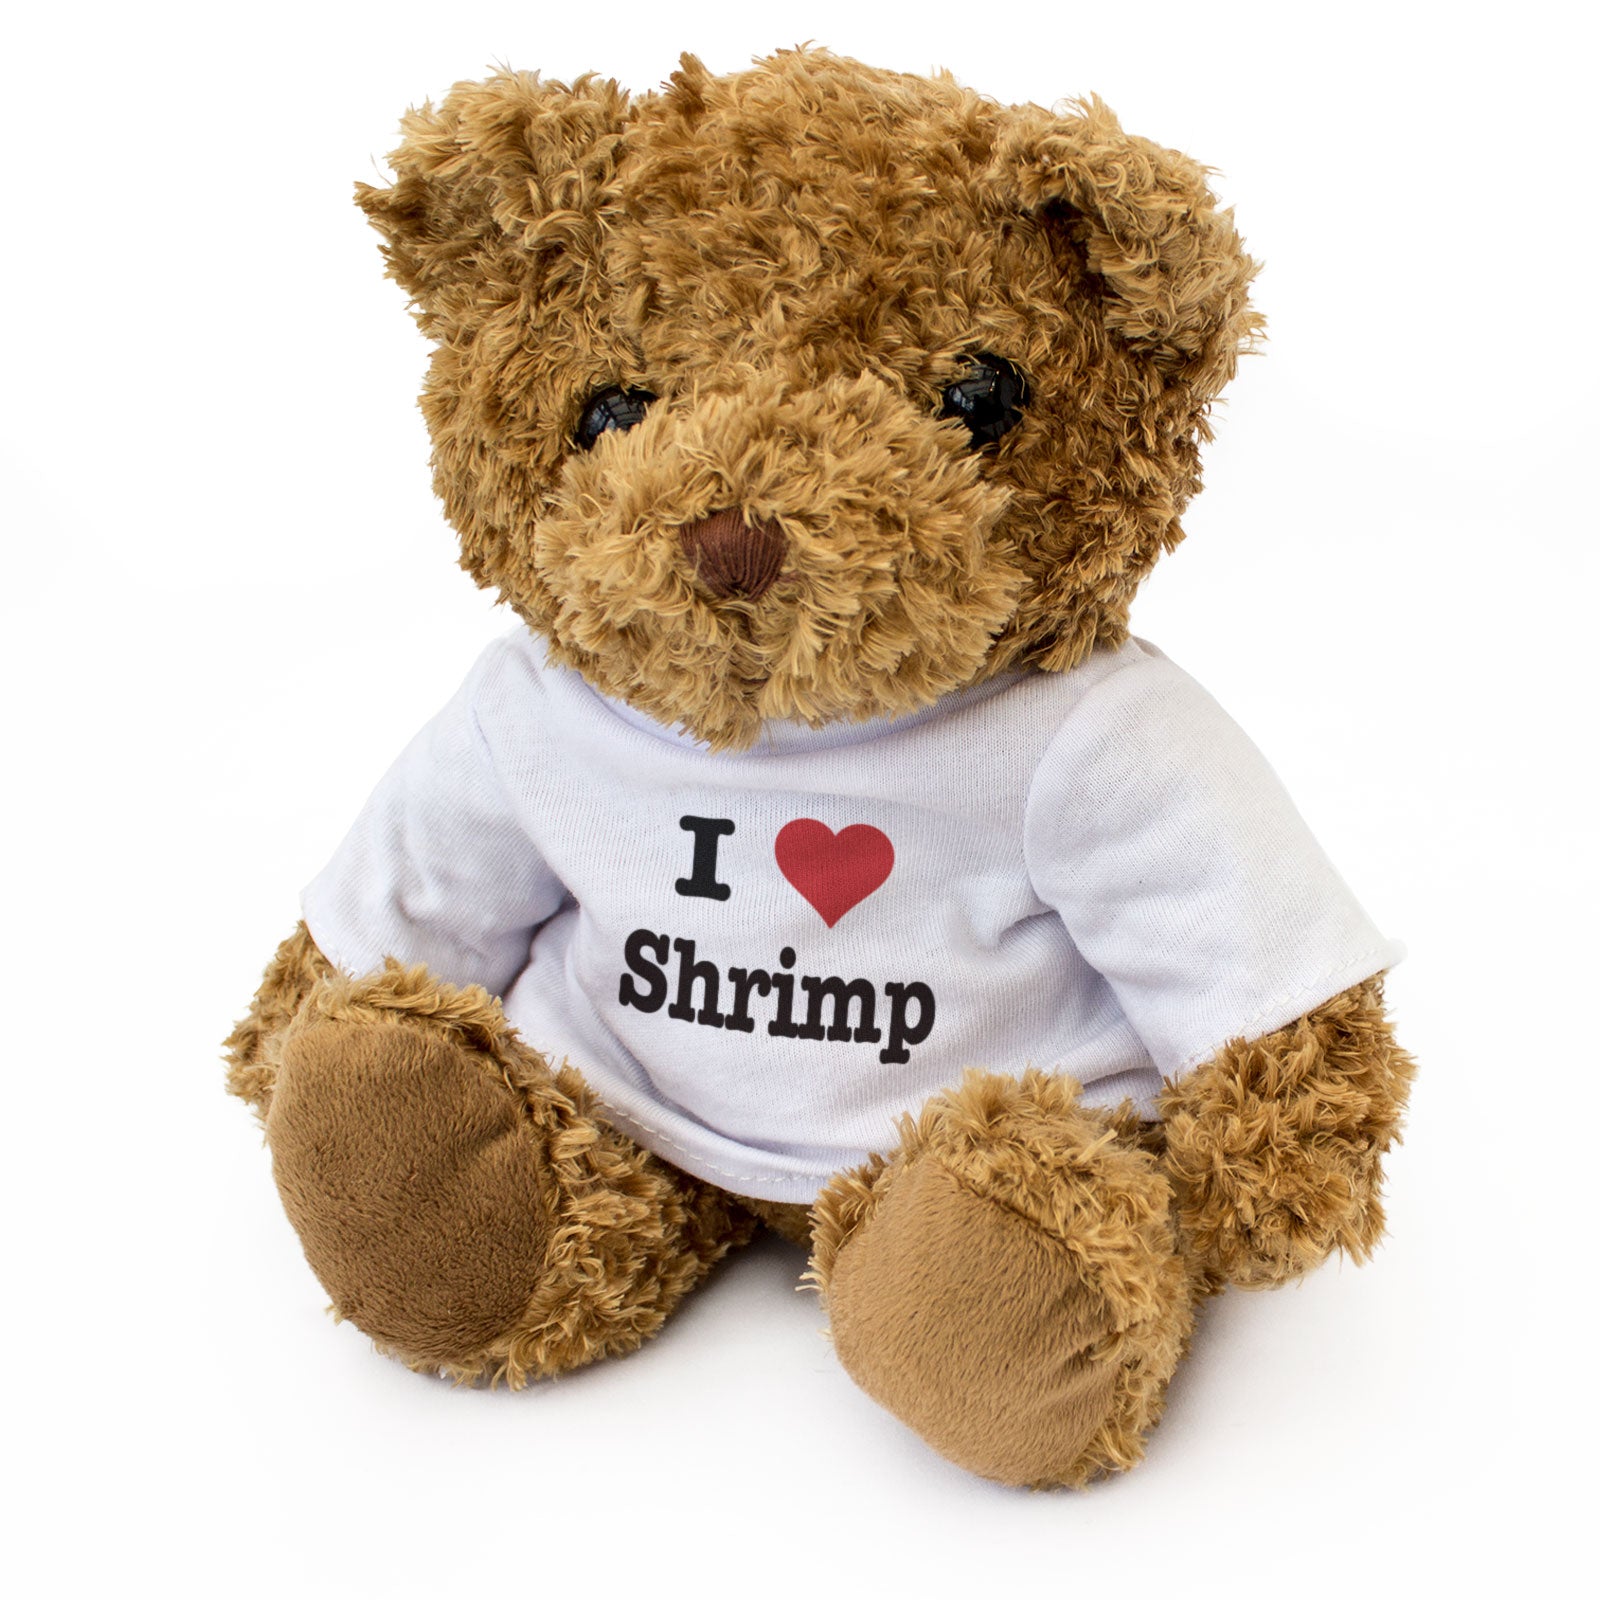 I Love Shrimp - Teddy Bear